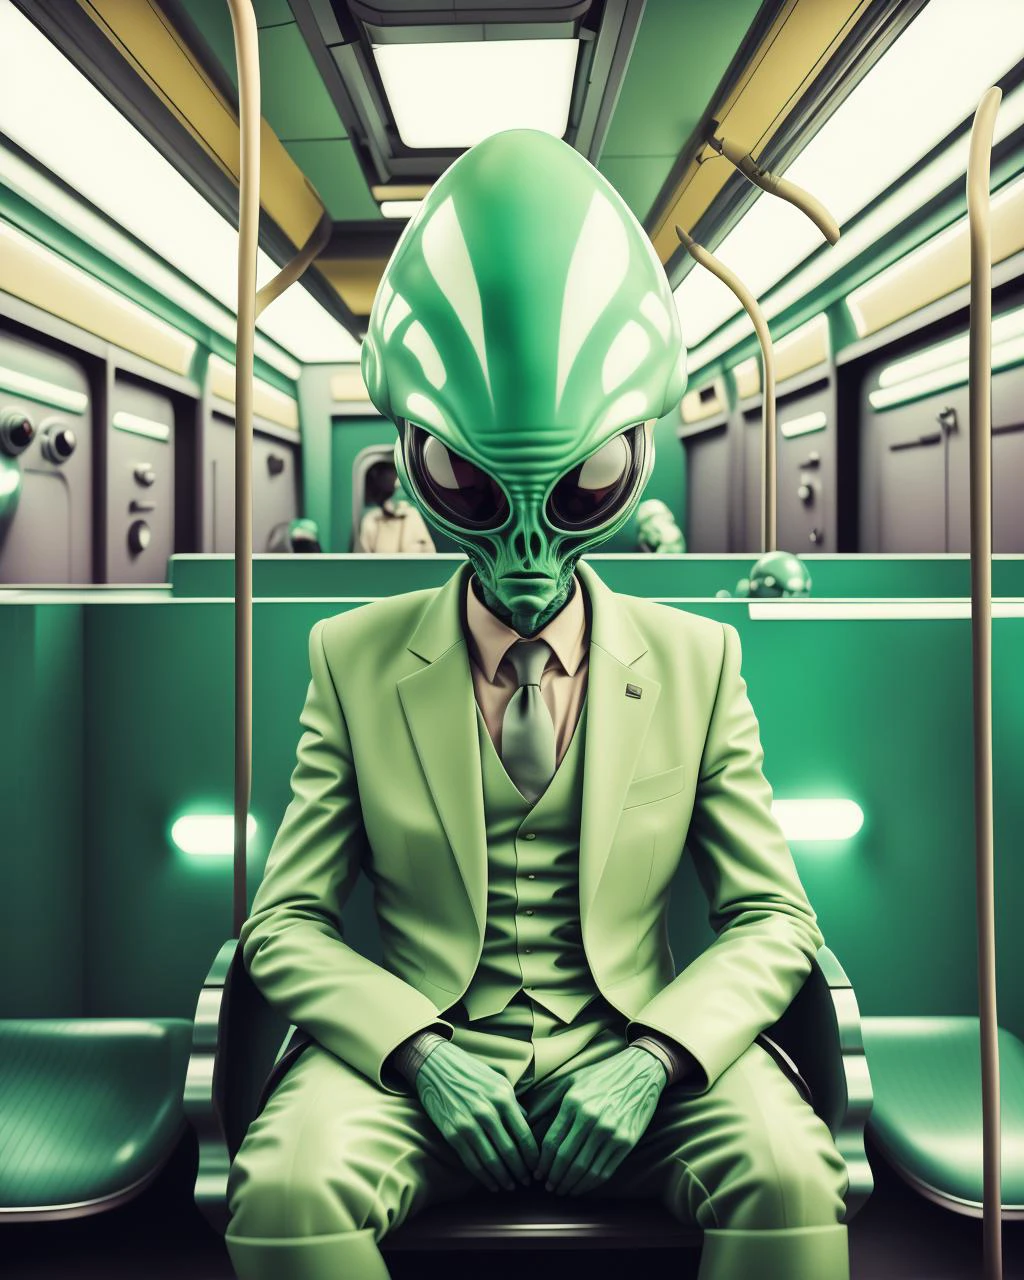 녹색 양복을 입은 남자가 기차에 앉아 있다